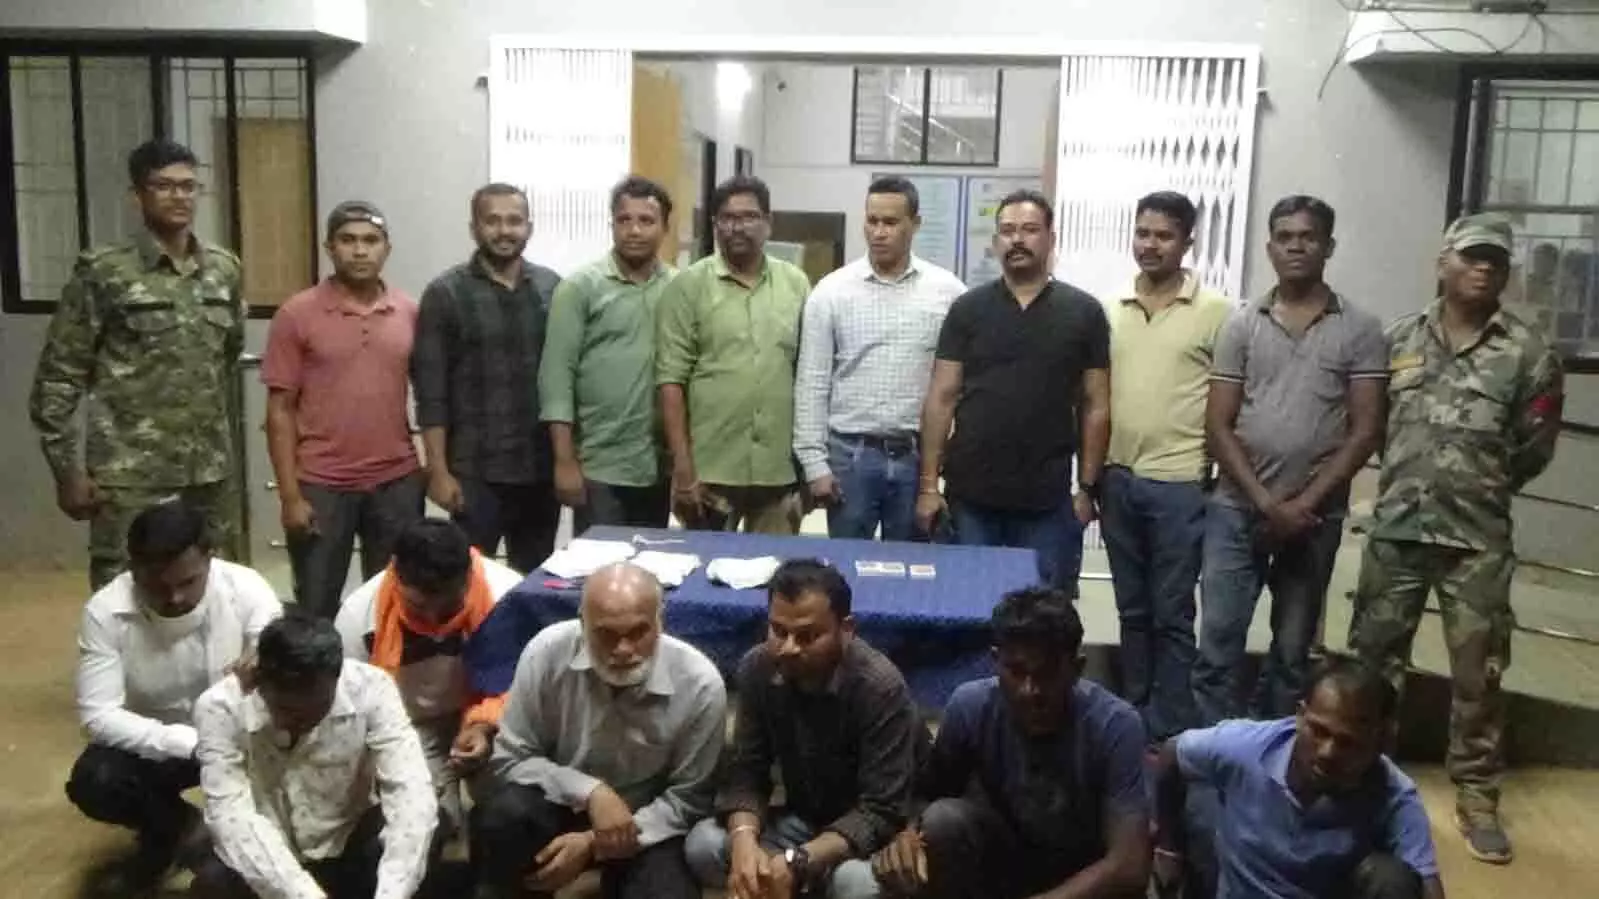 कोंडागांव में लाखों का जुआ फड़ लगाने वाले 7 जुआरी गिरफ्तार